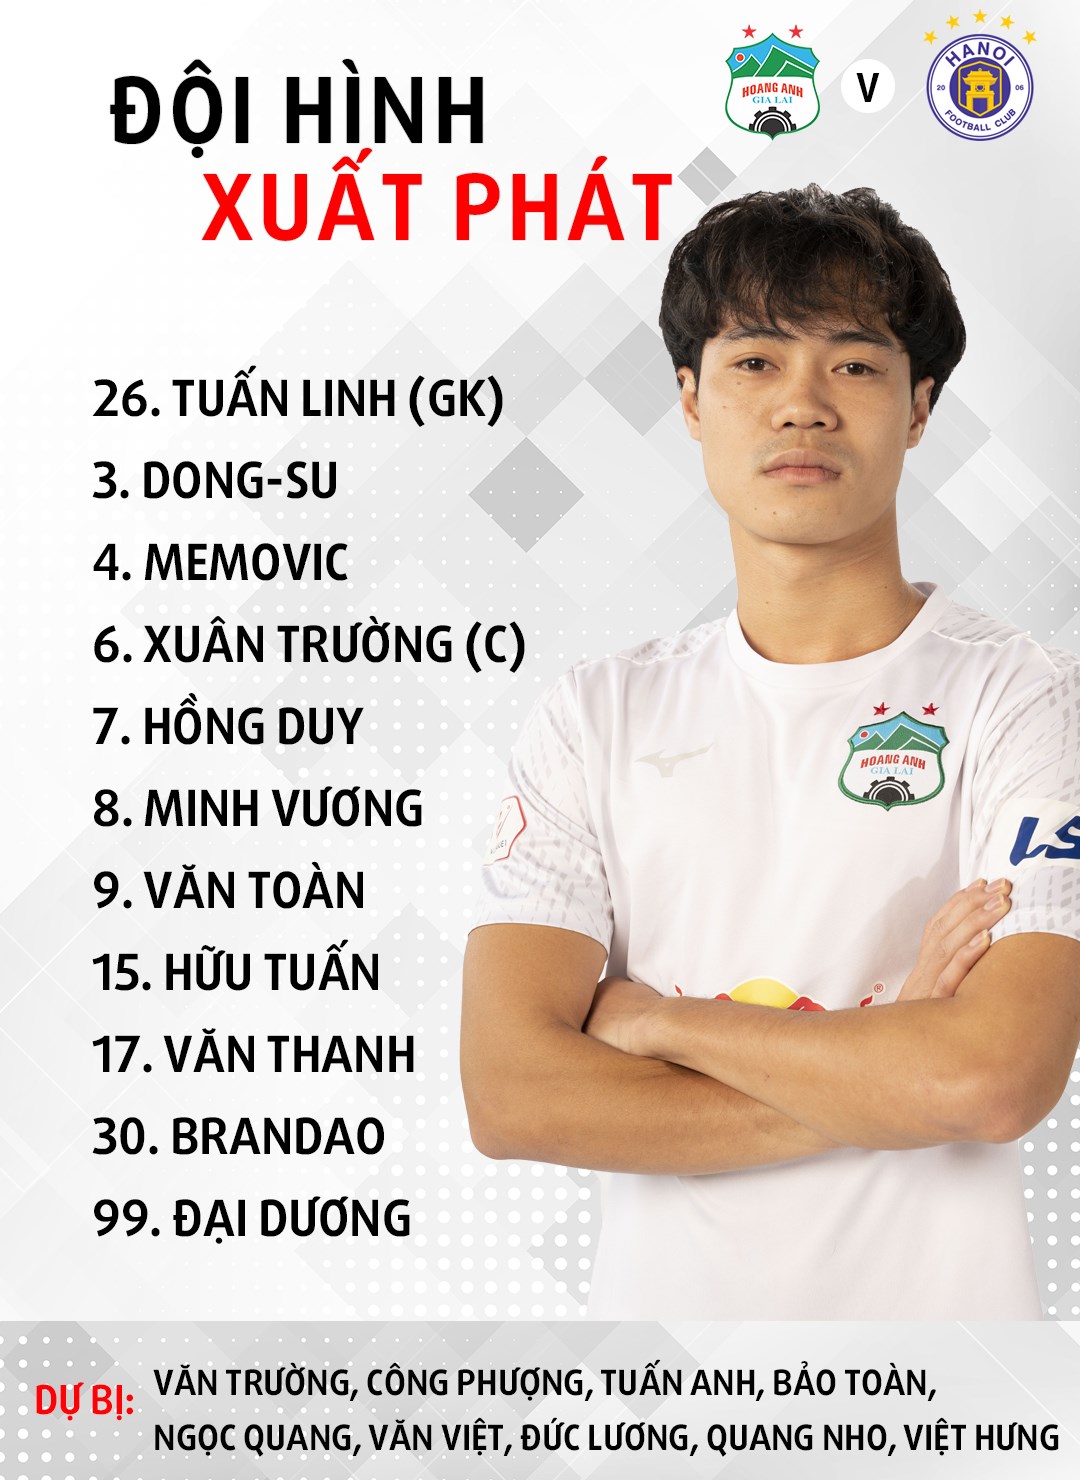 Cập nhật: Trực tiếp bóng đá hôm nay HAGL vs Hà Nội - Vòng 10 V.League 2021